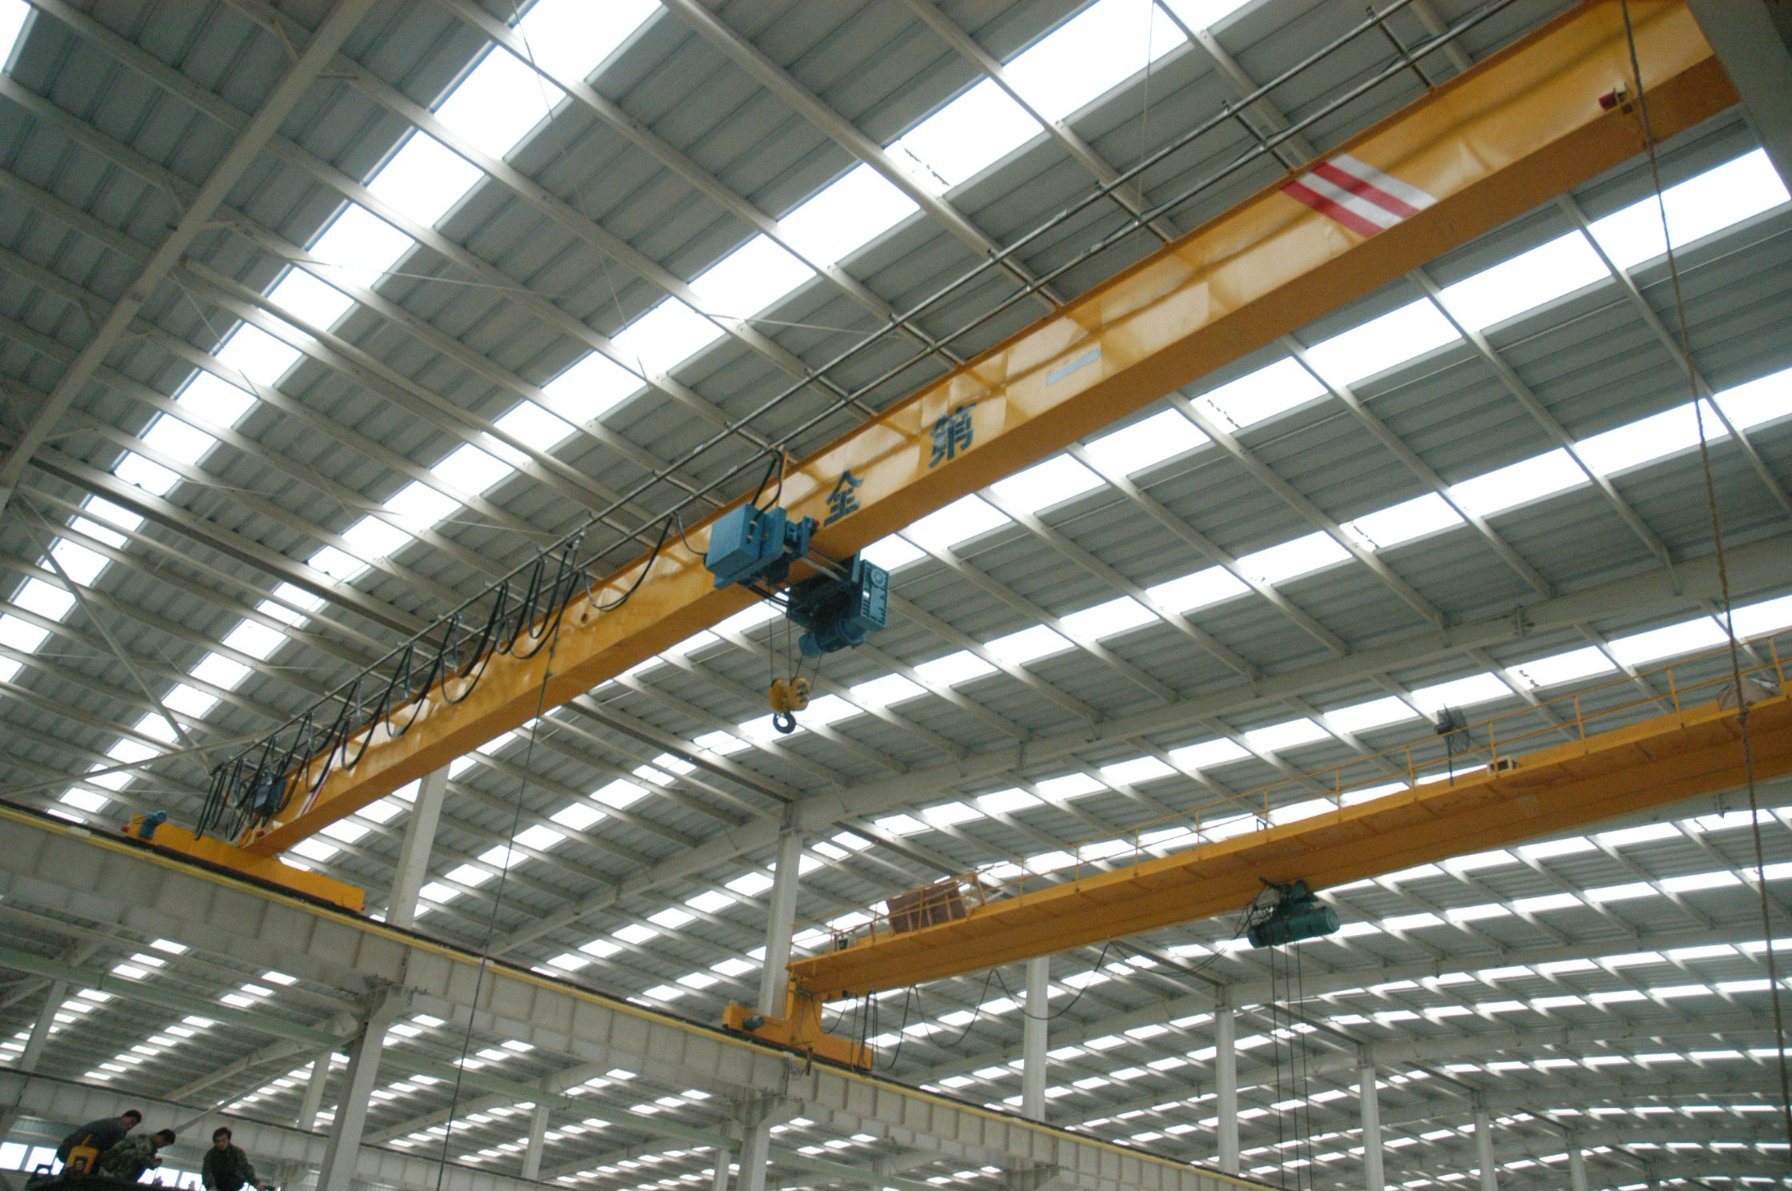 
                3 de 2 Ton Ton de 5 toneladas de 10 Ton grúa monorraíl operado solo techo viga viaja grúa para la fábrica y almacén
            